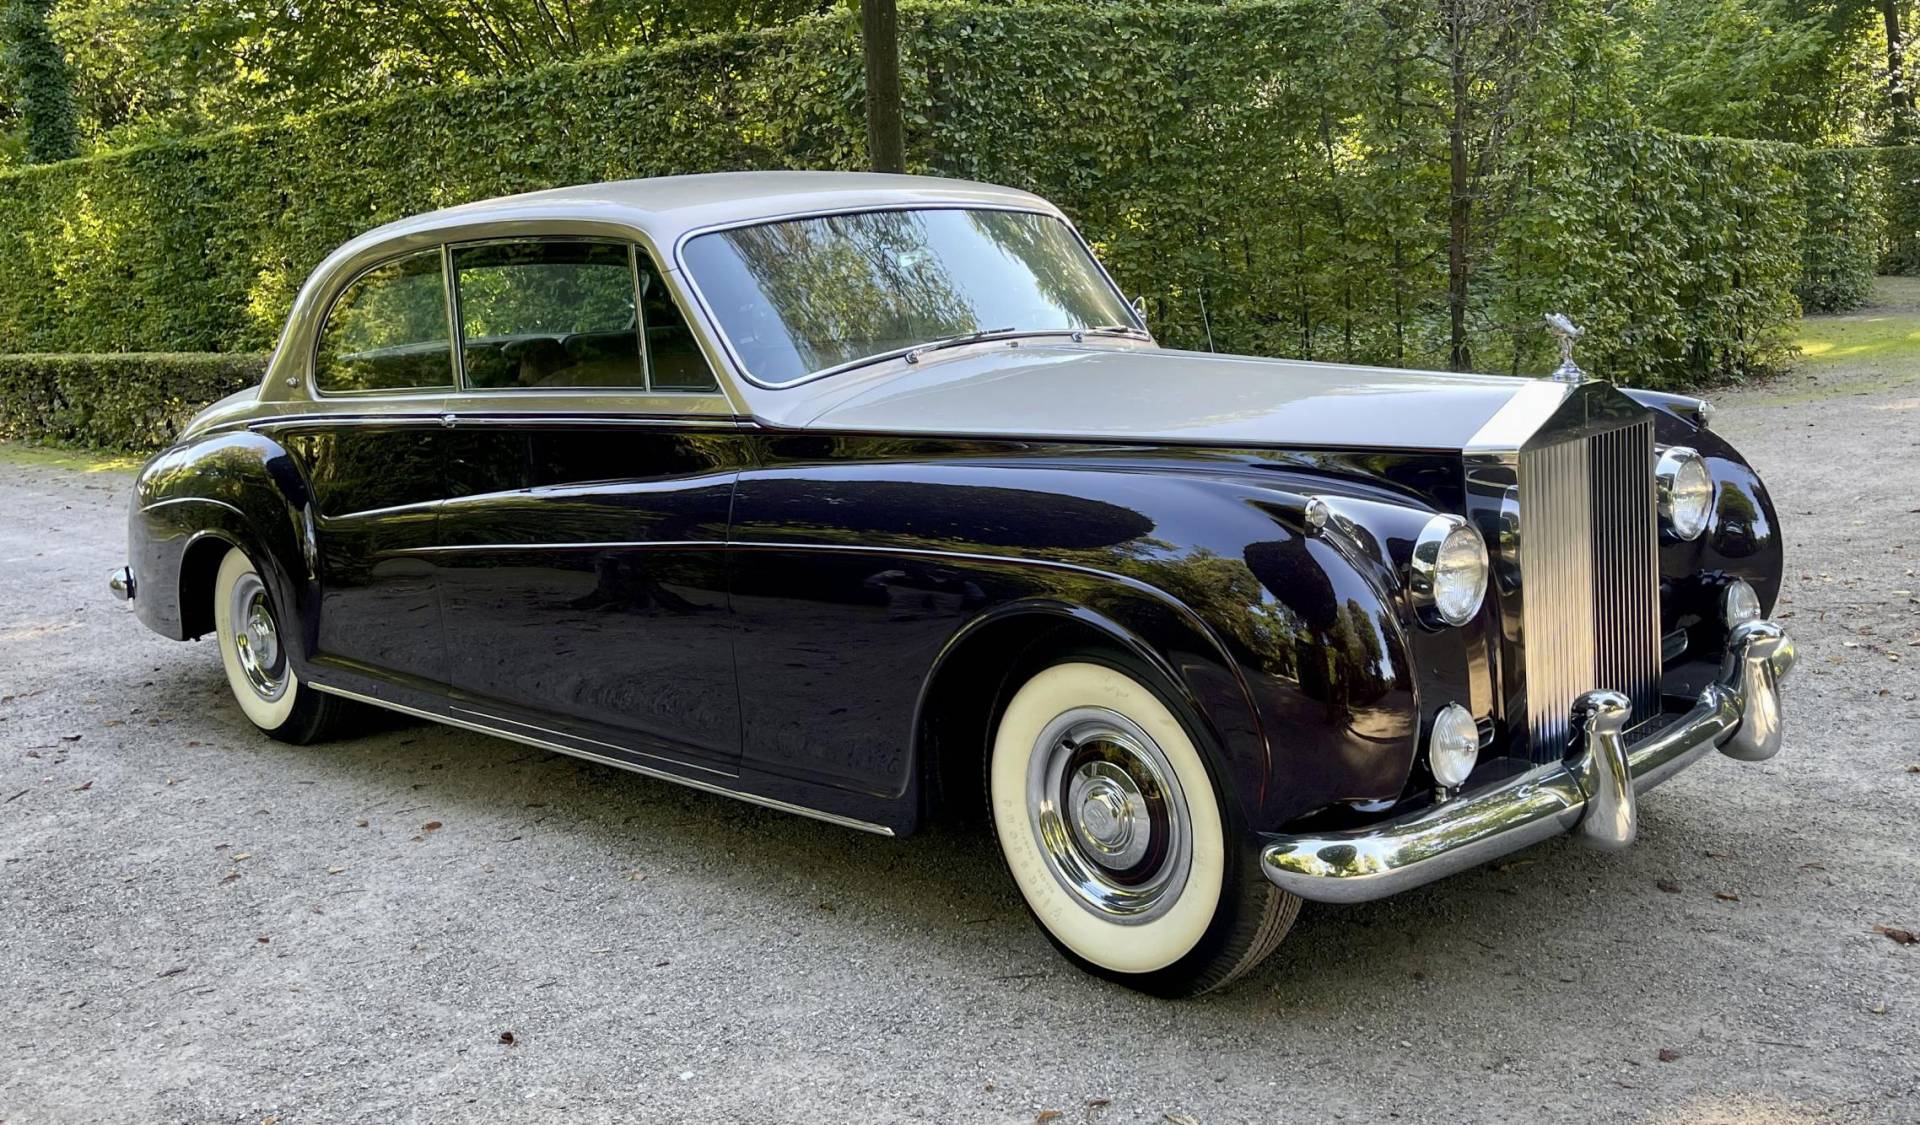 For Sale RollsRoyce Phantom V 1961 offered for 420000